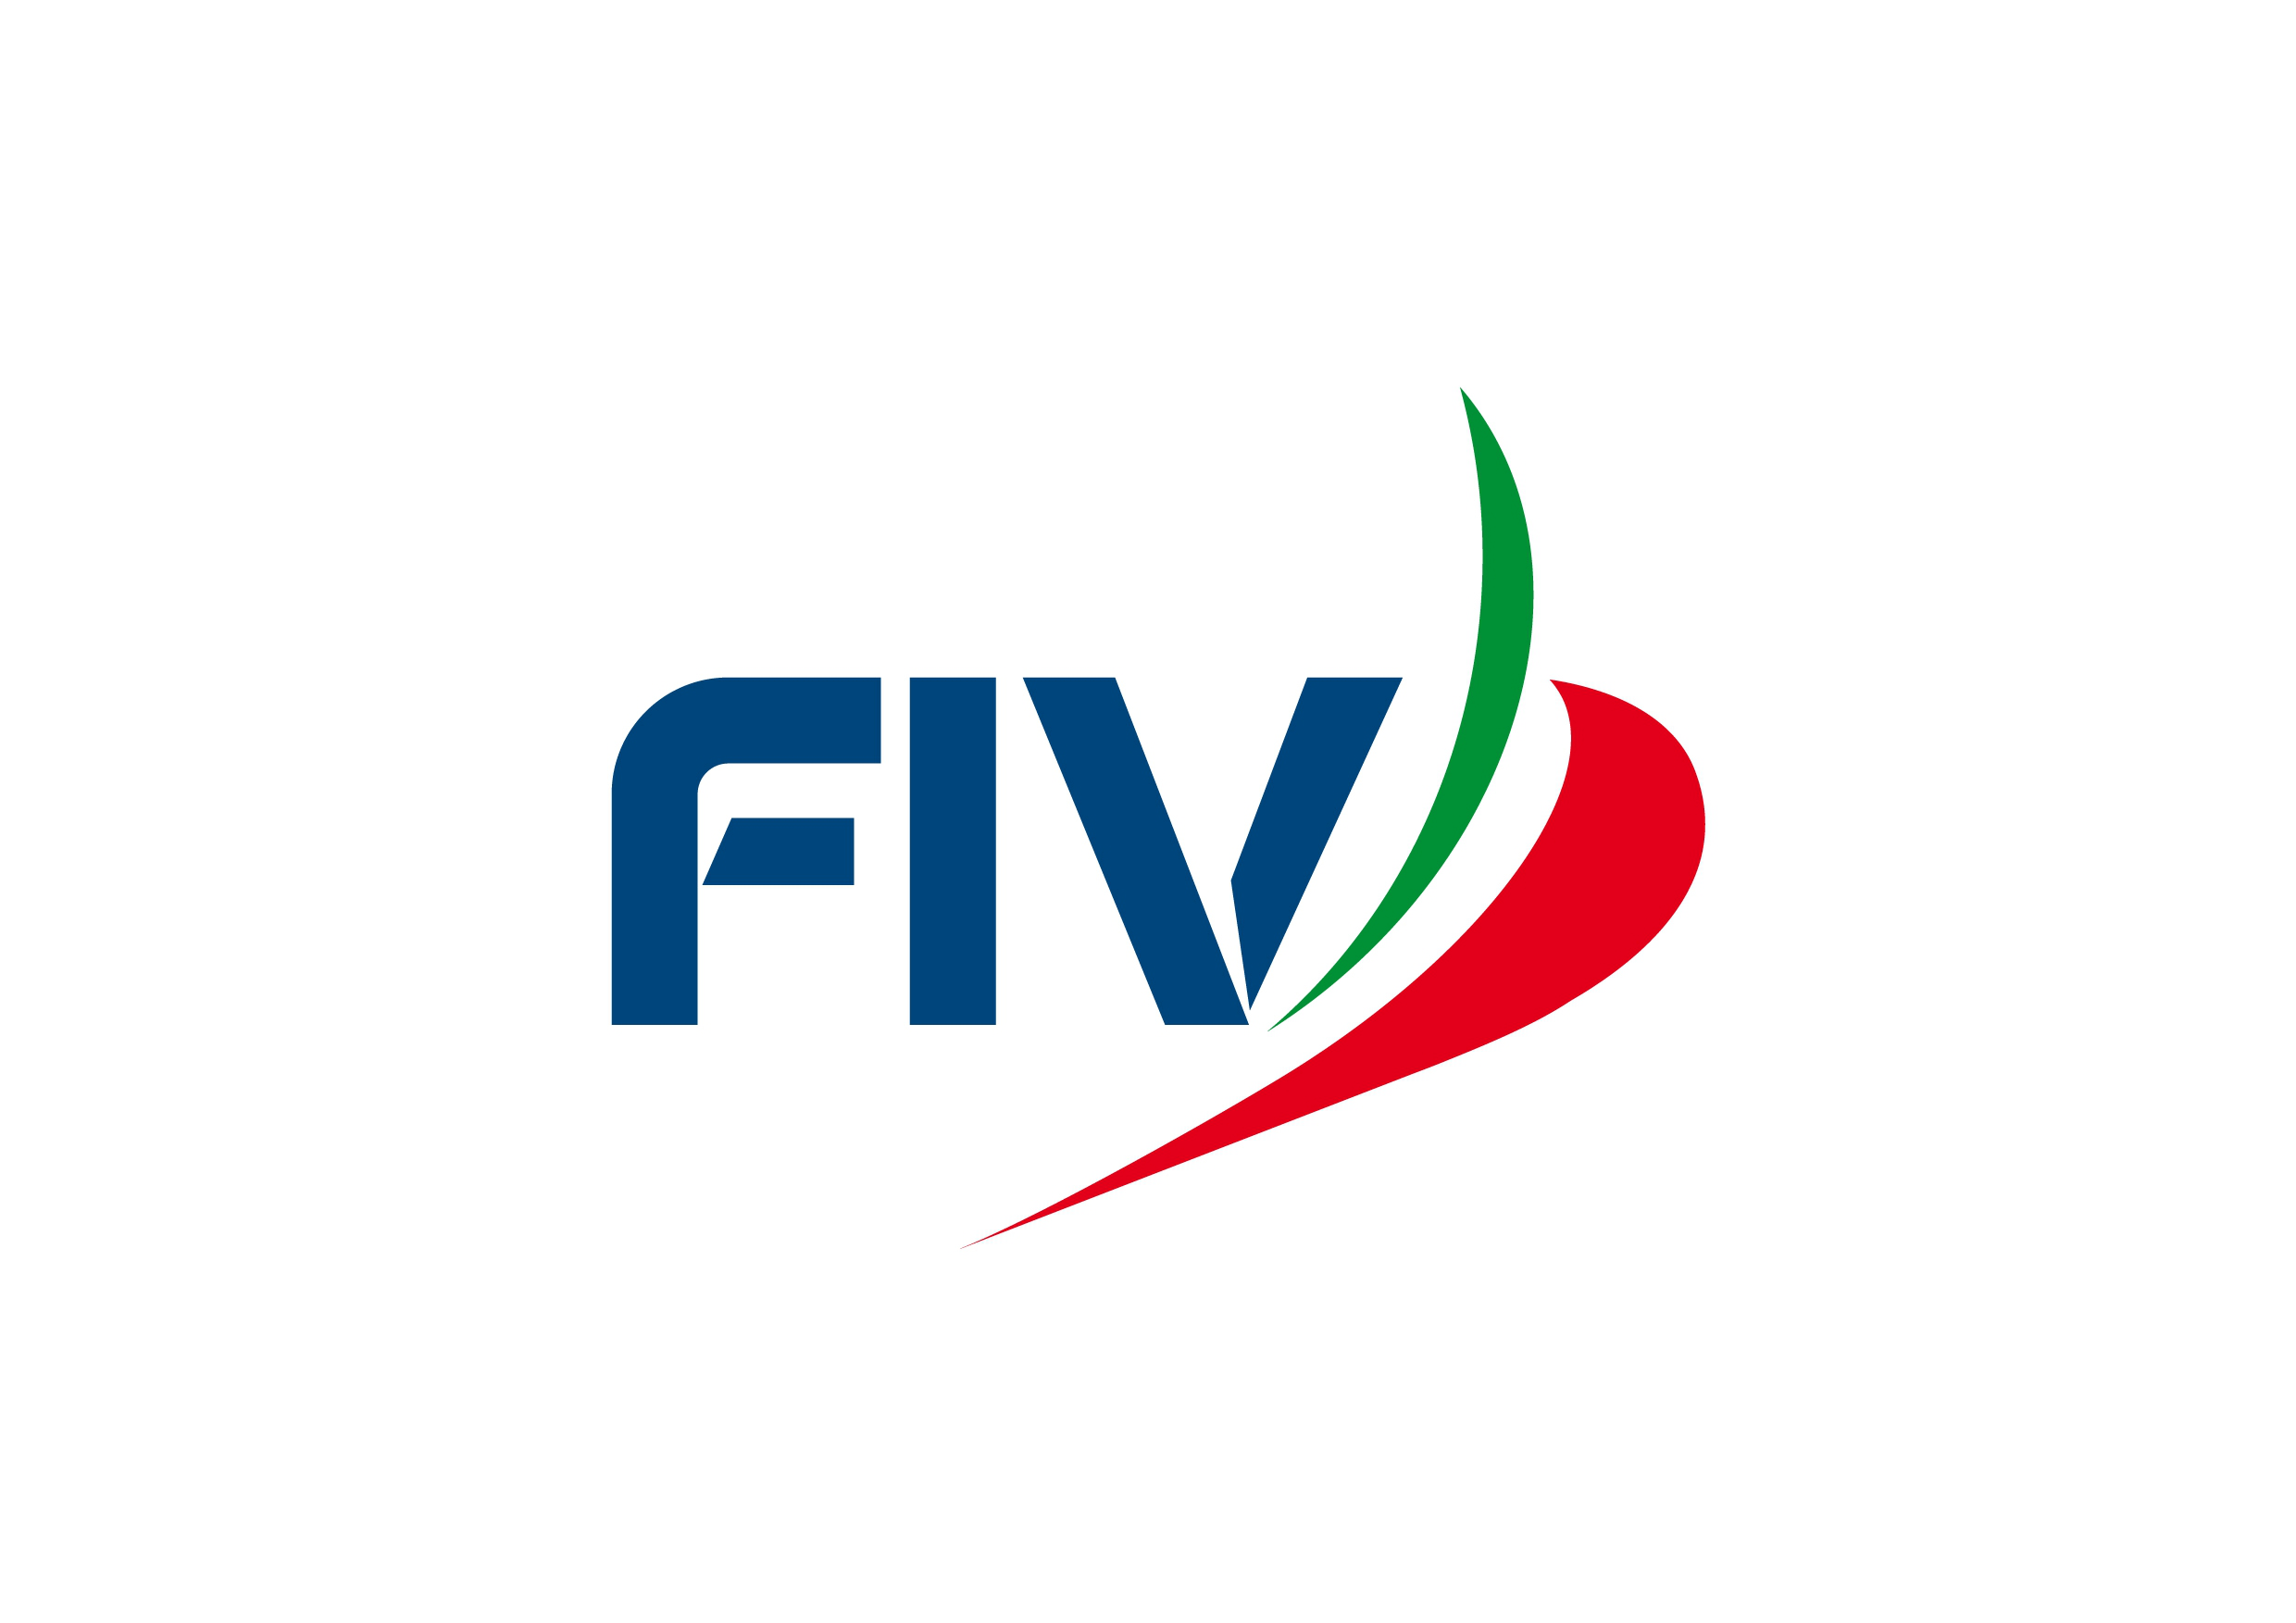 images/fiv/fiv_logo_4.png